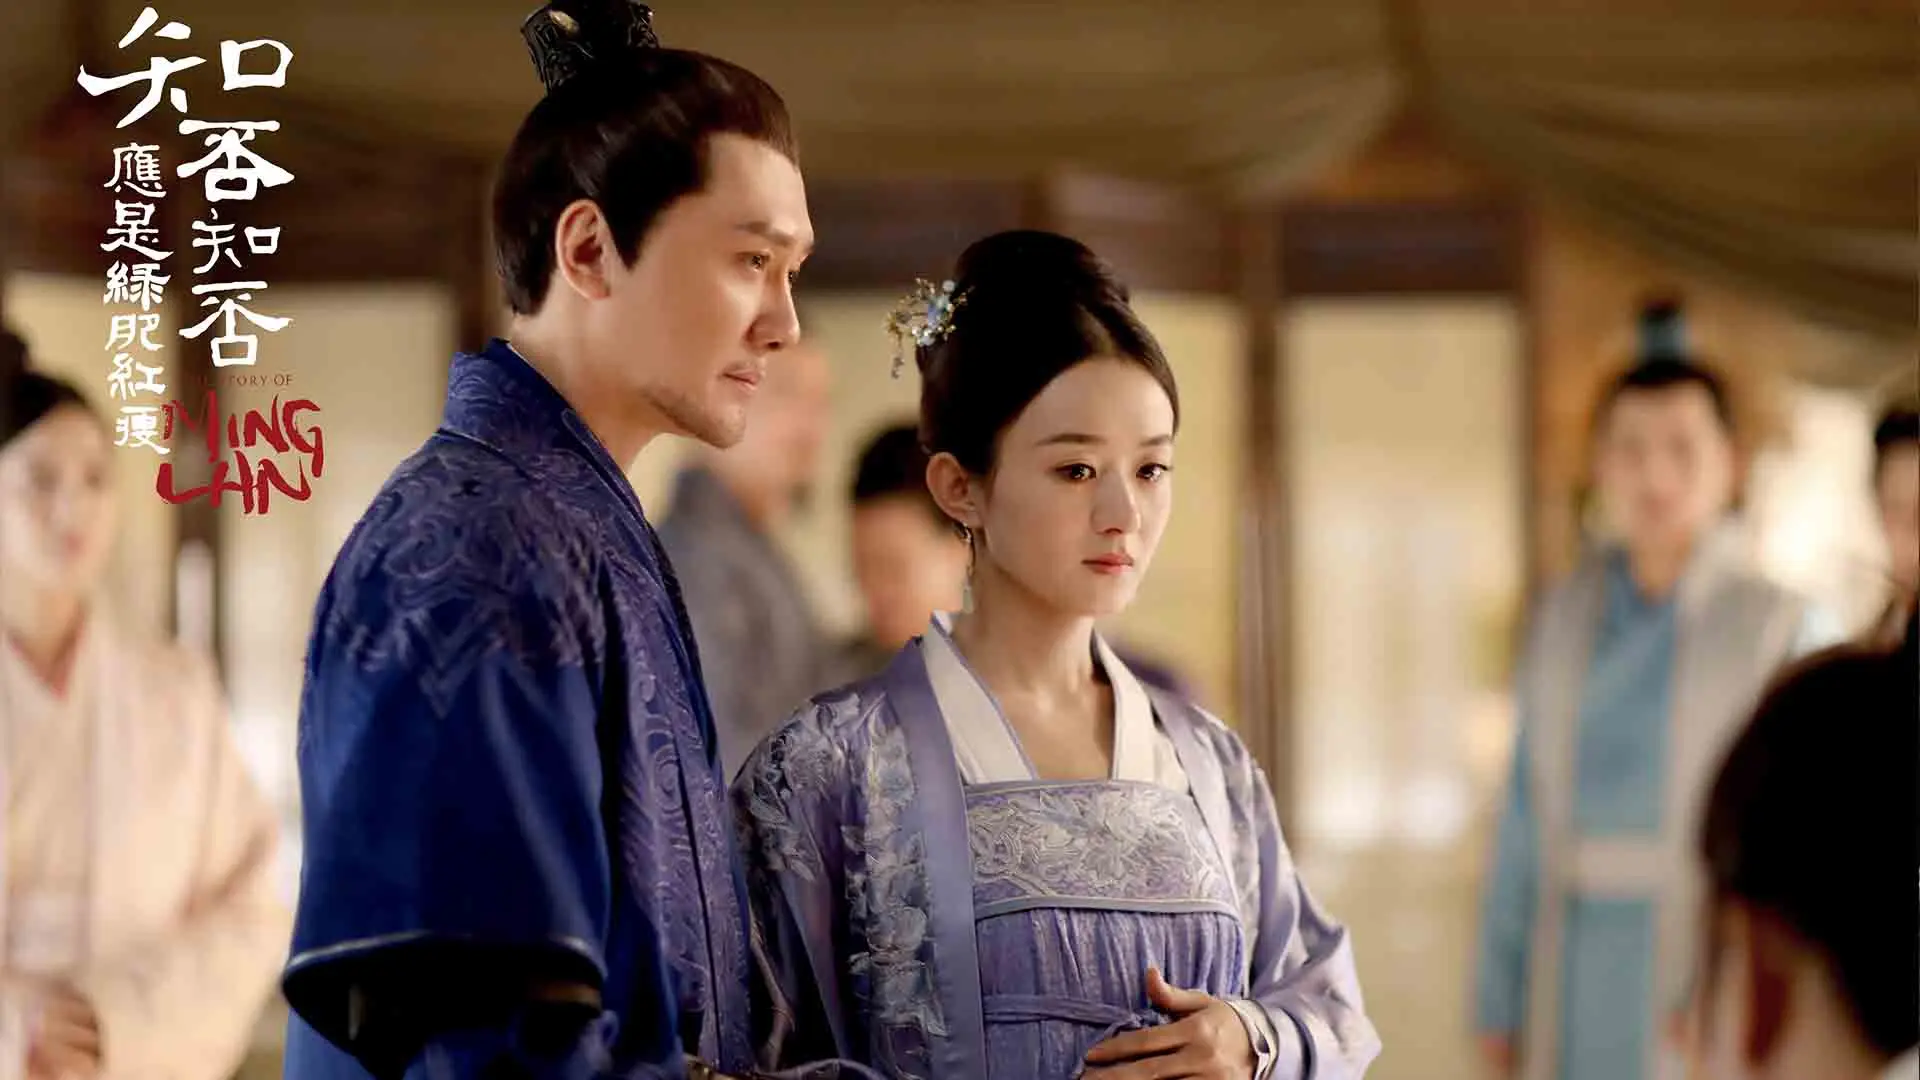 زنی باردار به همراه همسر خود در سریال The Story of Ming Lan ۳۰ تا از بهترین سریال های چینی بهمراه امتیاز IMDB ایتی مایتی